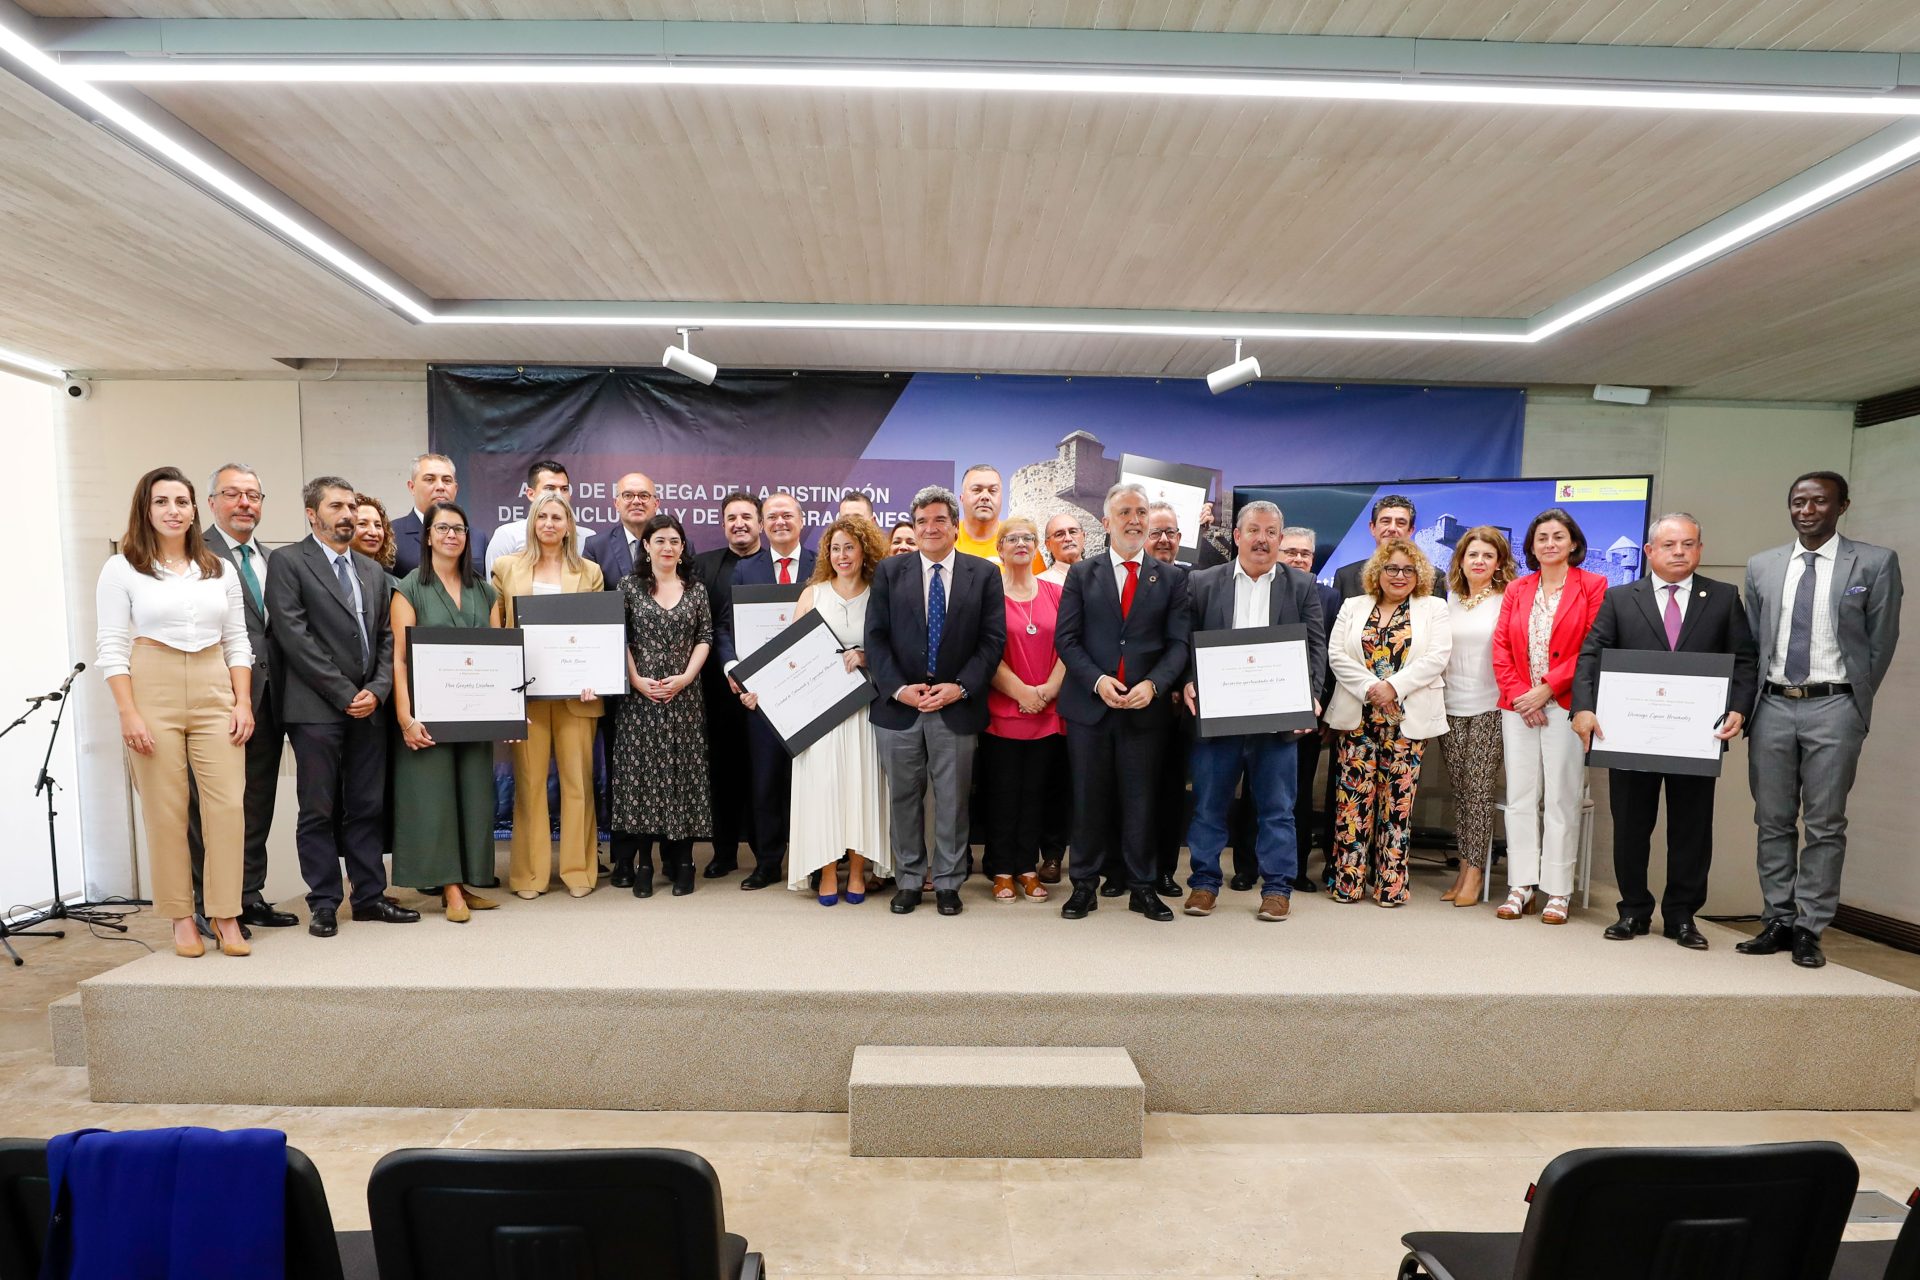 El ministro de Inclusión Social, José Luis Escrivá, y el presidente de Canarias, Ángel Víctor Torres, posan con los premiados. EFE/Elvira Urquijo Á.